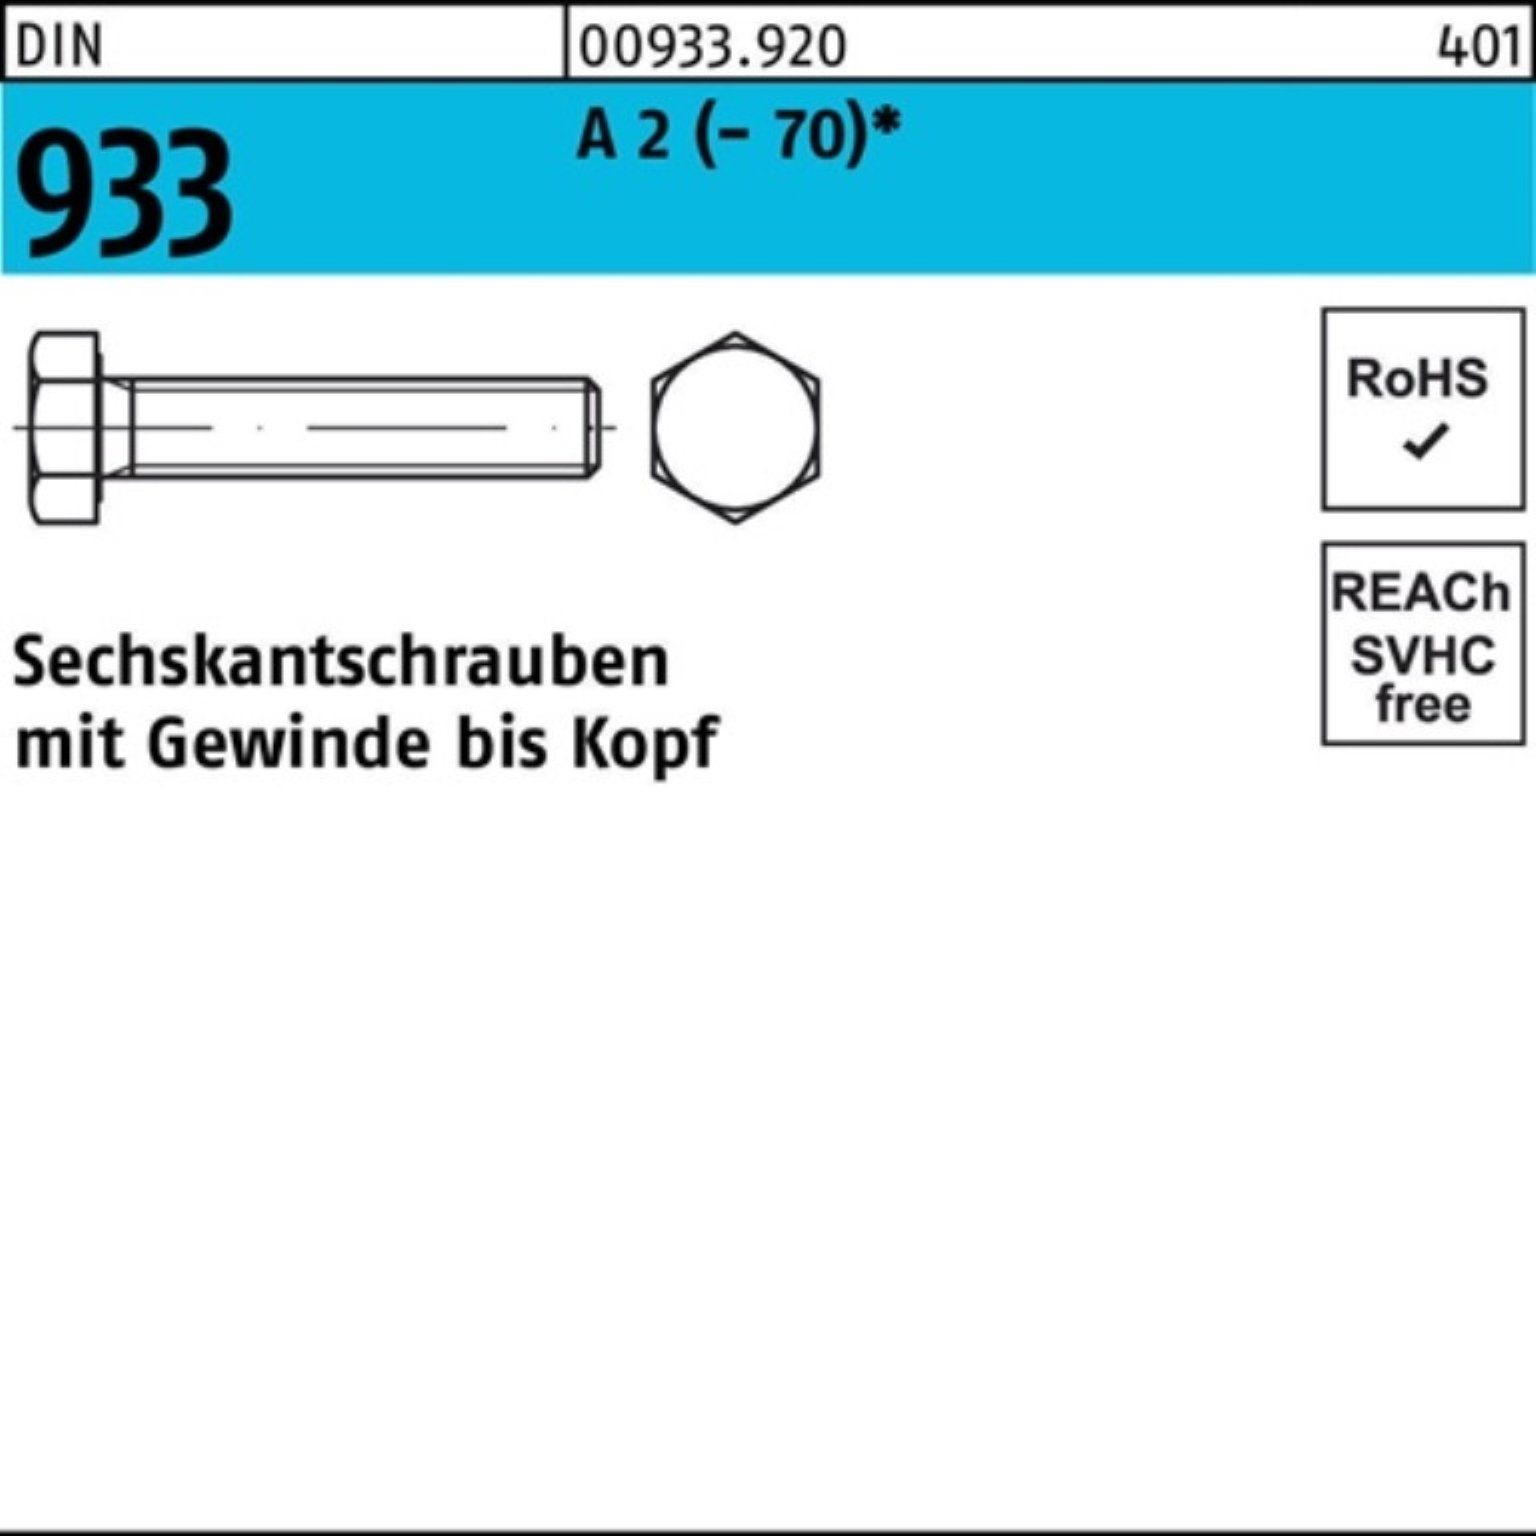 Reyher Sechskantschraube 100er Pack Sechskantschraube VG 50 90 2 D M10x (70) A Stück 933 DIN